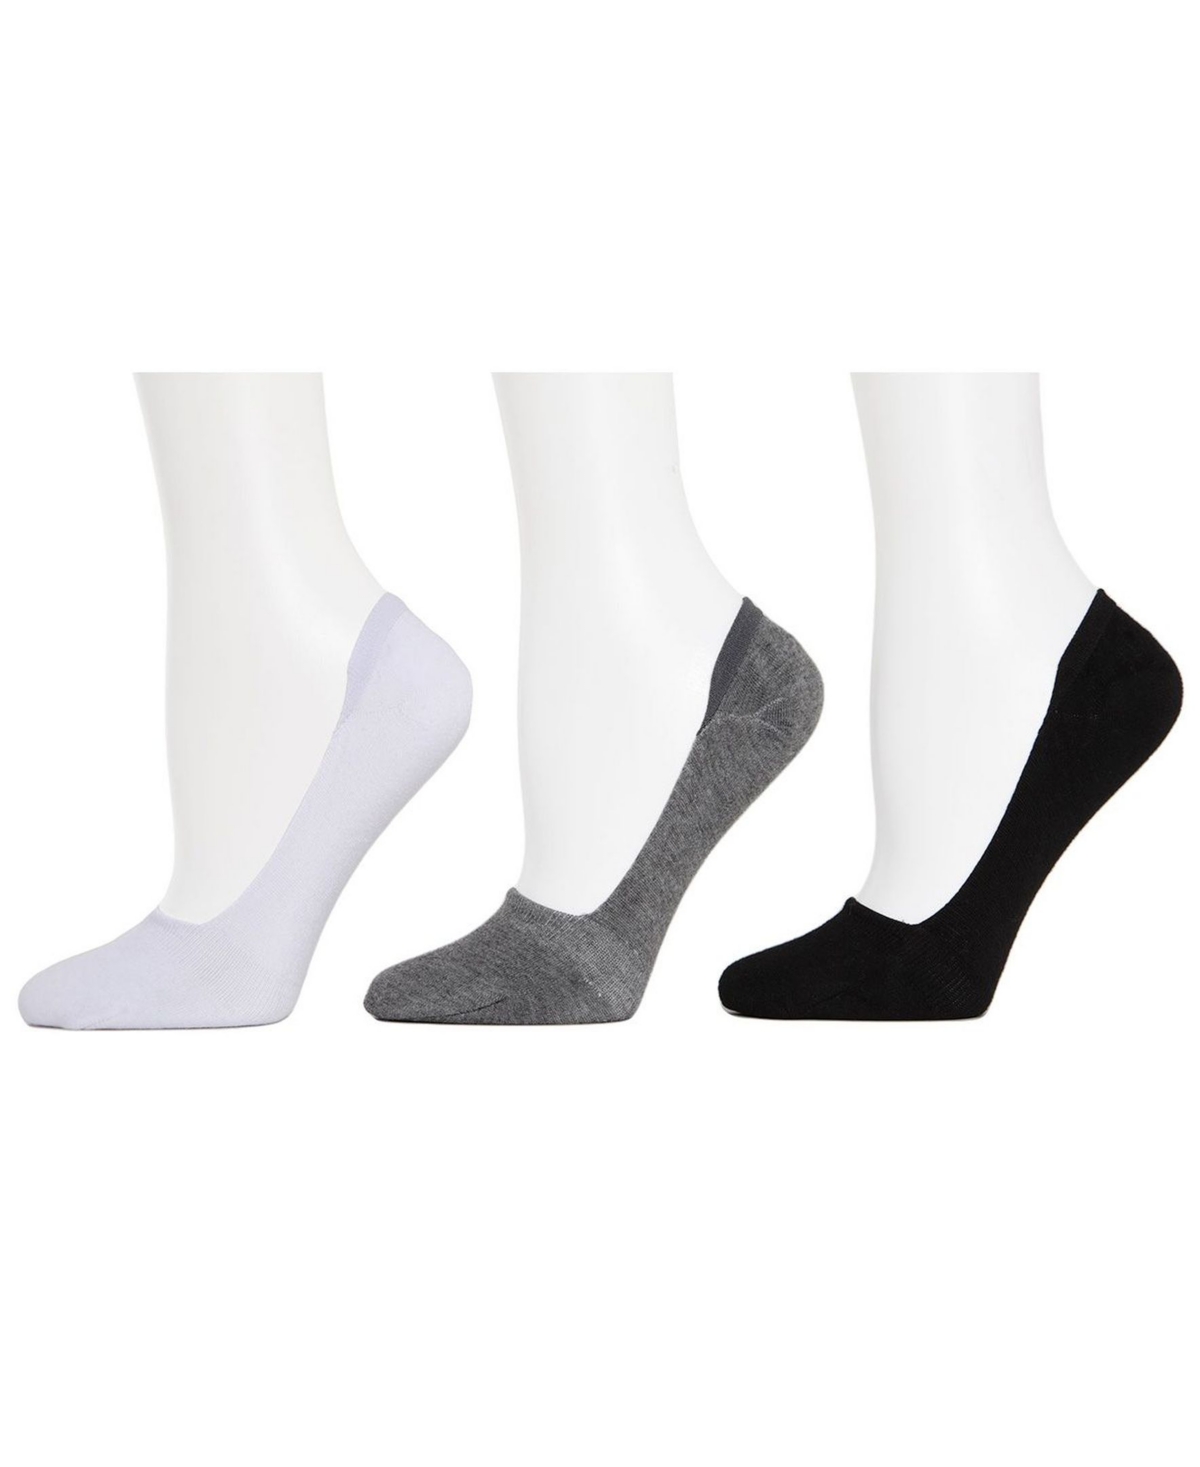 Mid-Cut Women's Liner Socks, Pack of 7 - Black